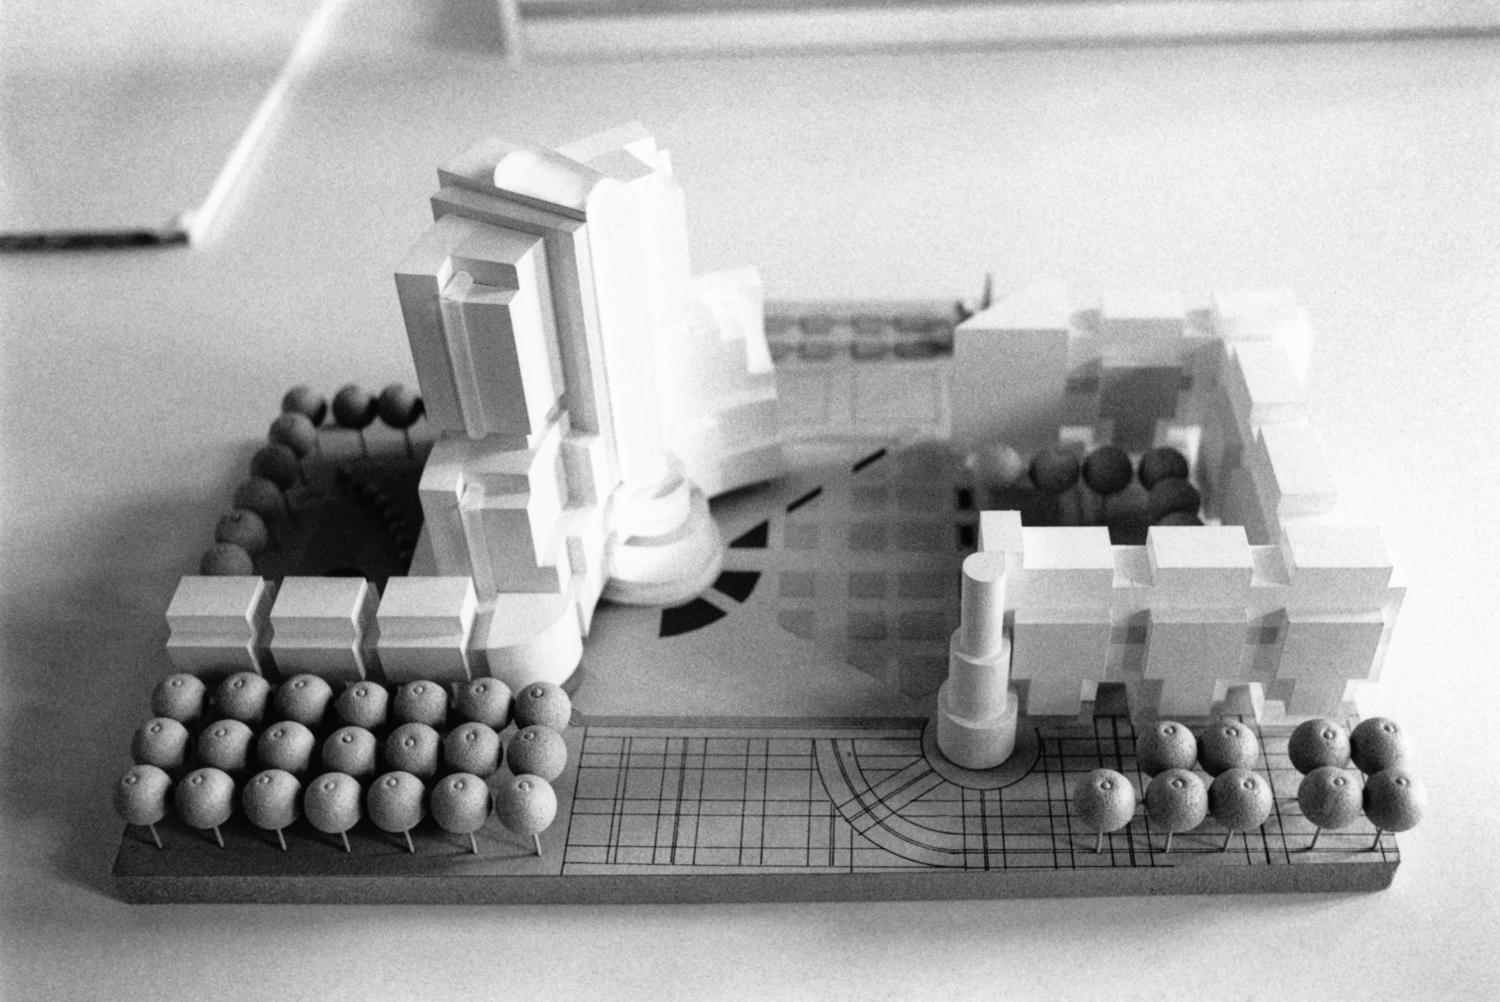 Rhône. Lyon : quinze monuments en Lego® à l'hôtel de Région